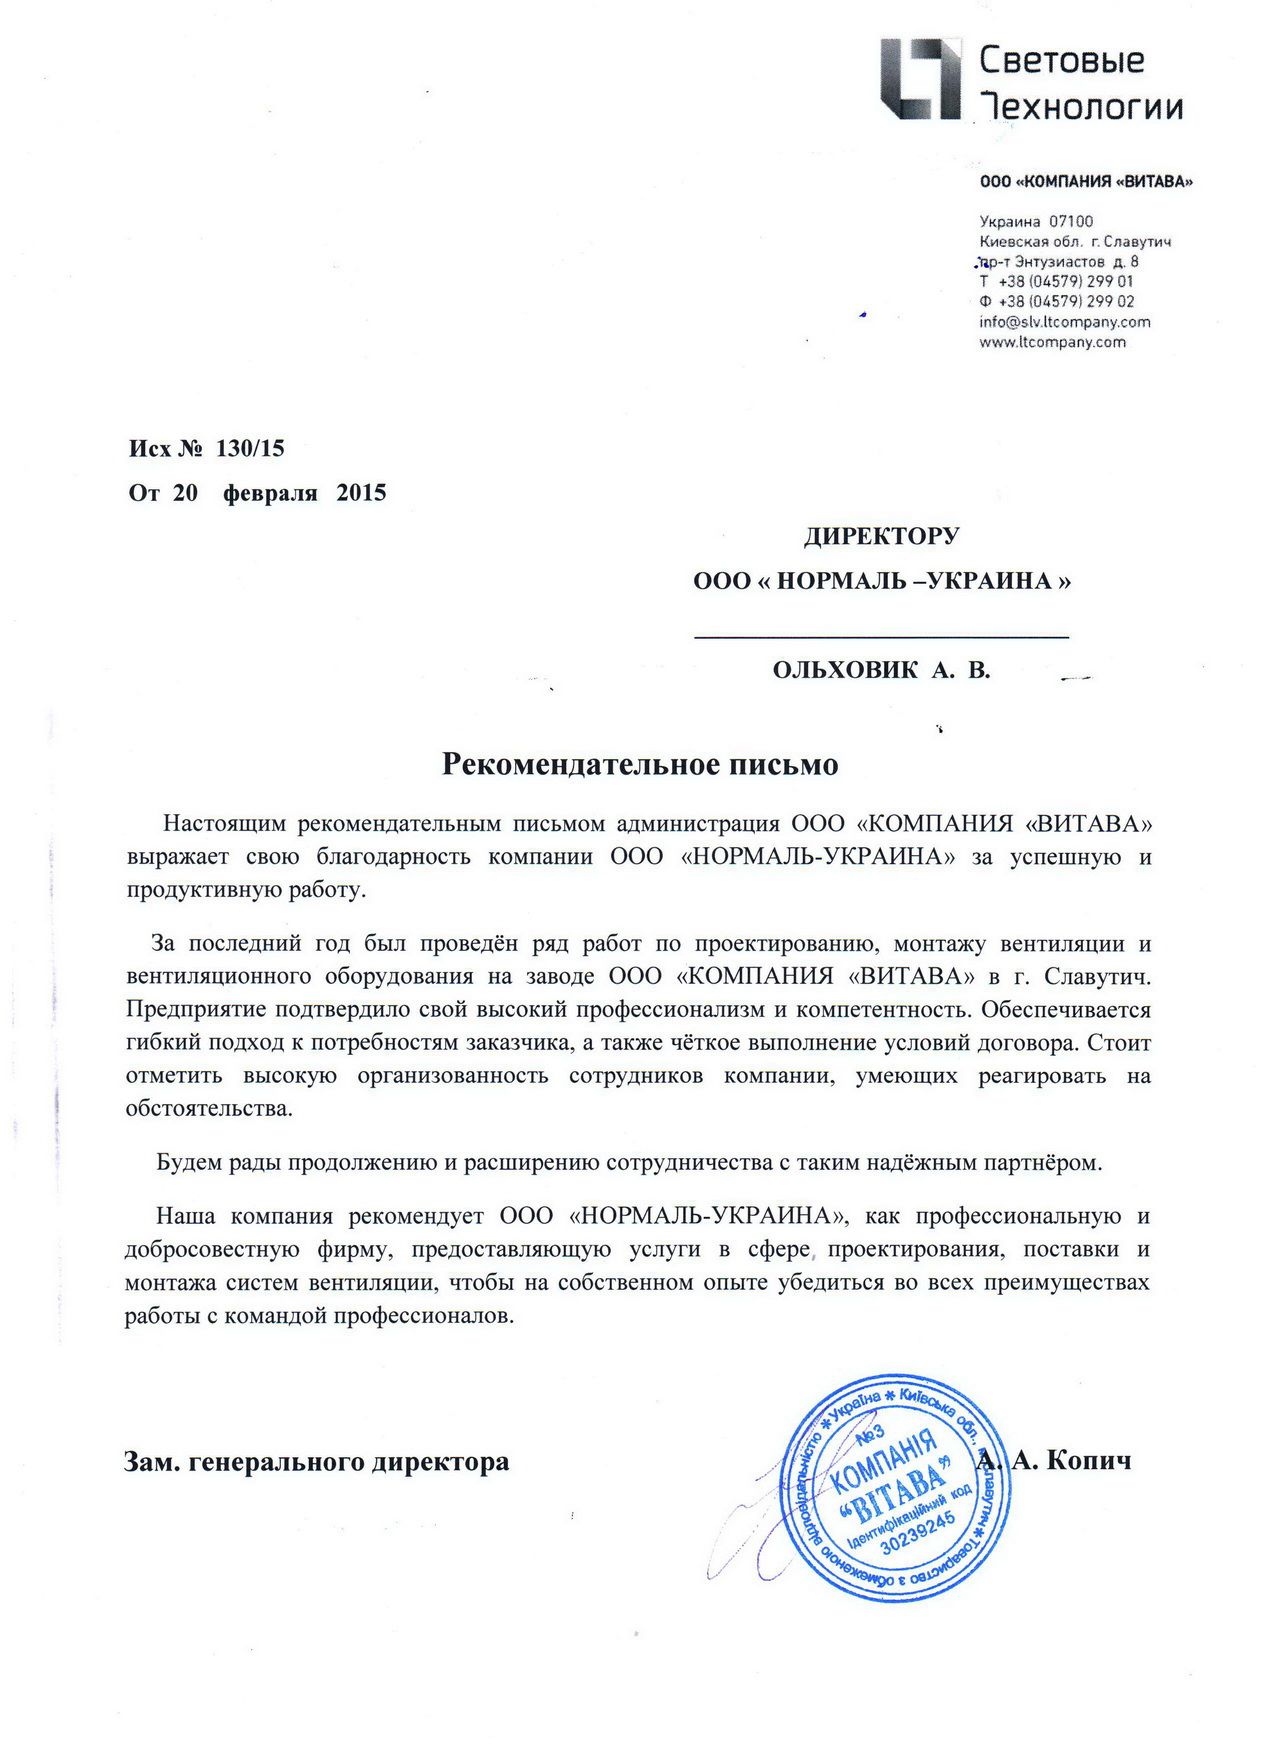 Рекомендательное письмо ООО Компания Витава, г. Славутич